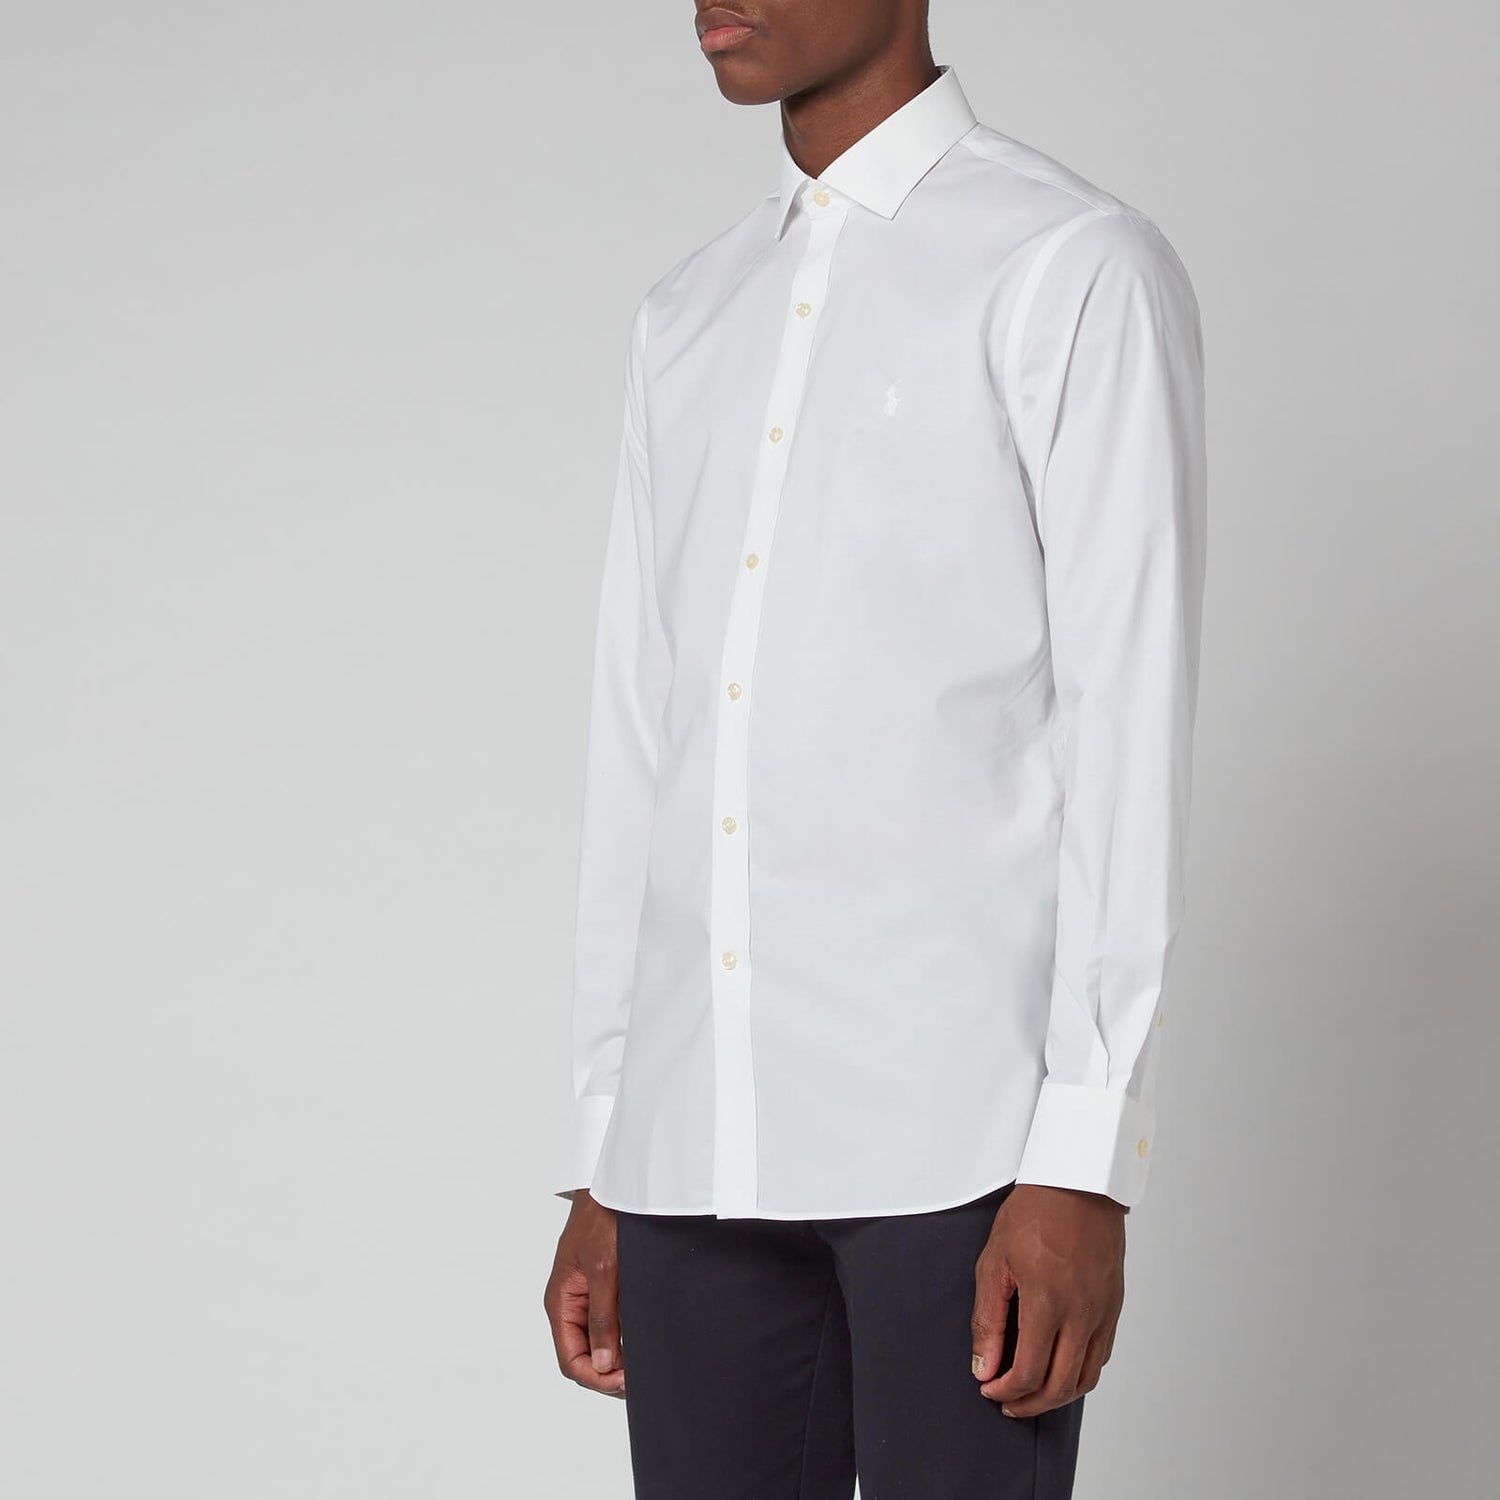 Polo Ralph Lauren Men's Slim Fit Poplin Shirt - White - 15.5